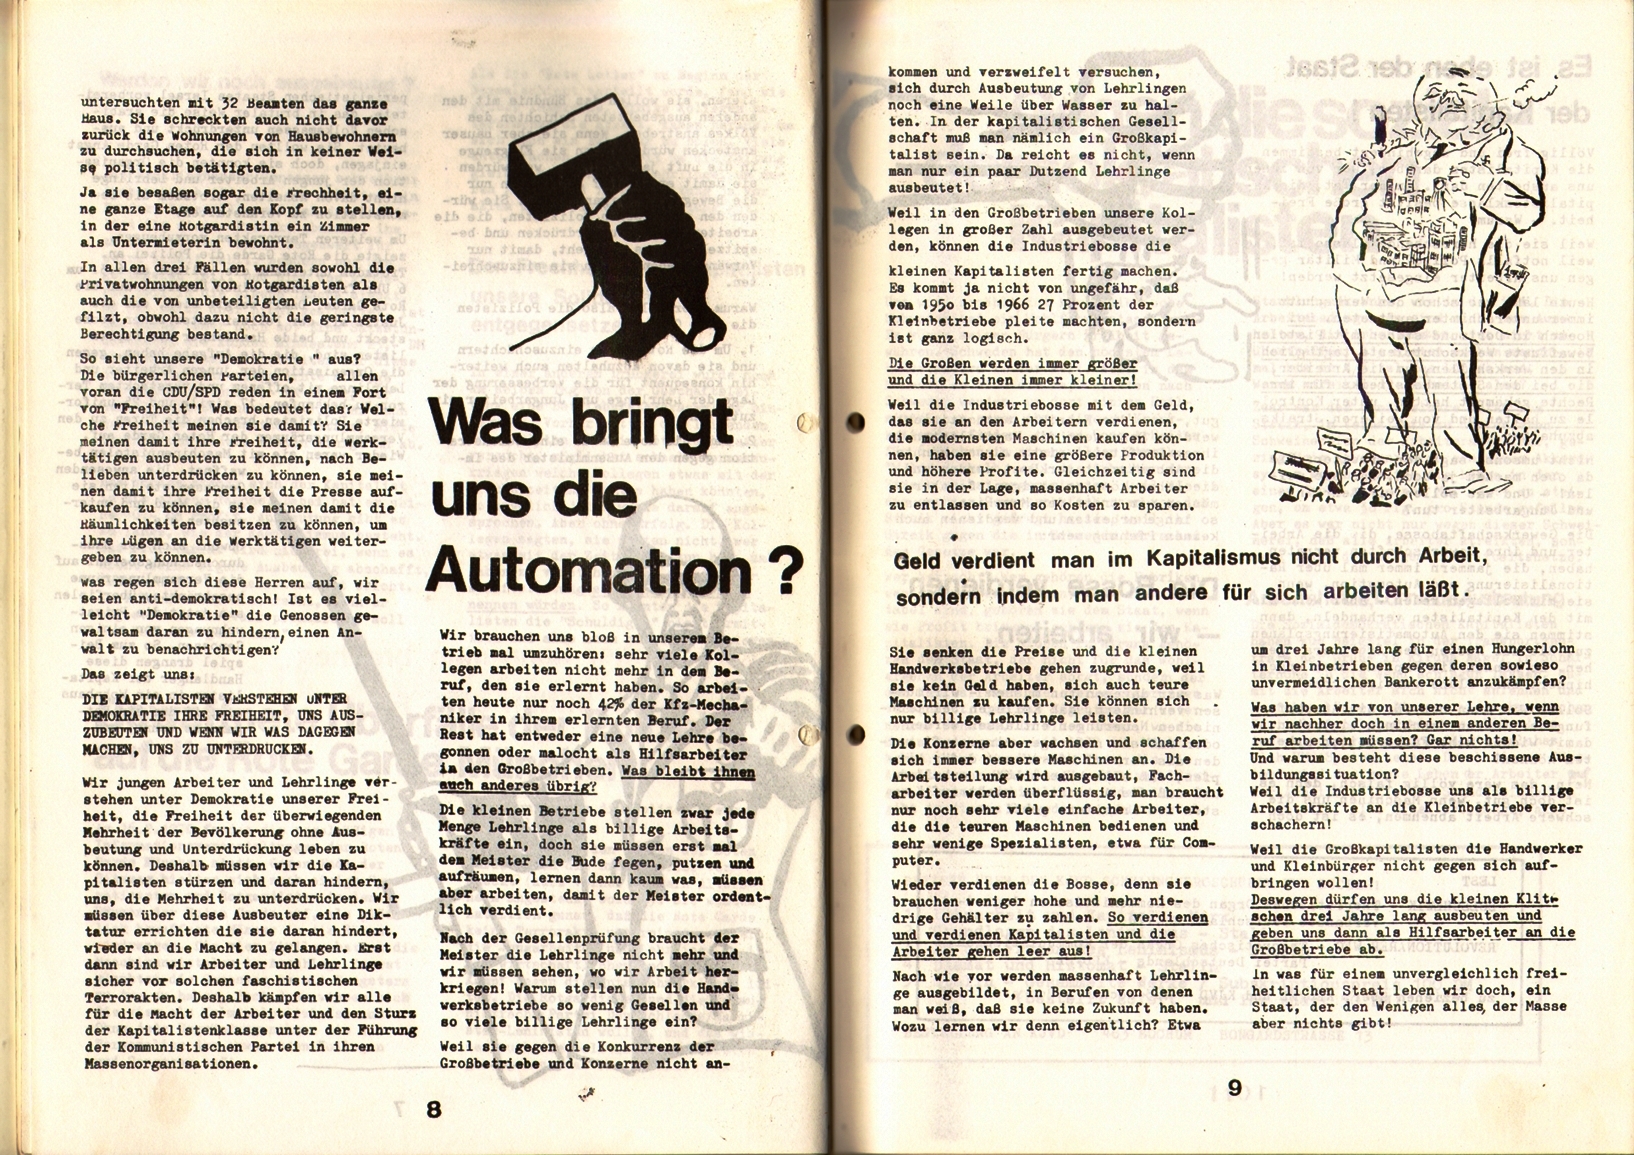 KDAJ, 1. Jg., April 1970, Nr. 1, Seite 8+9